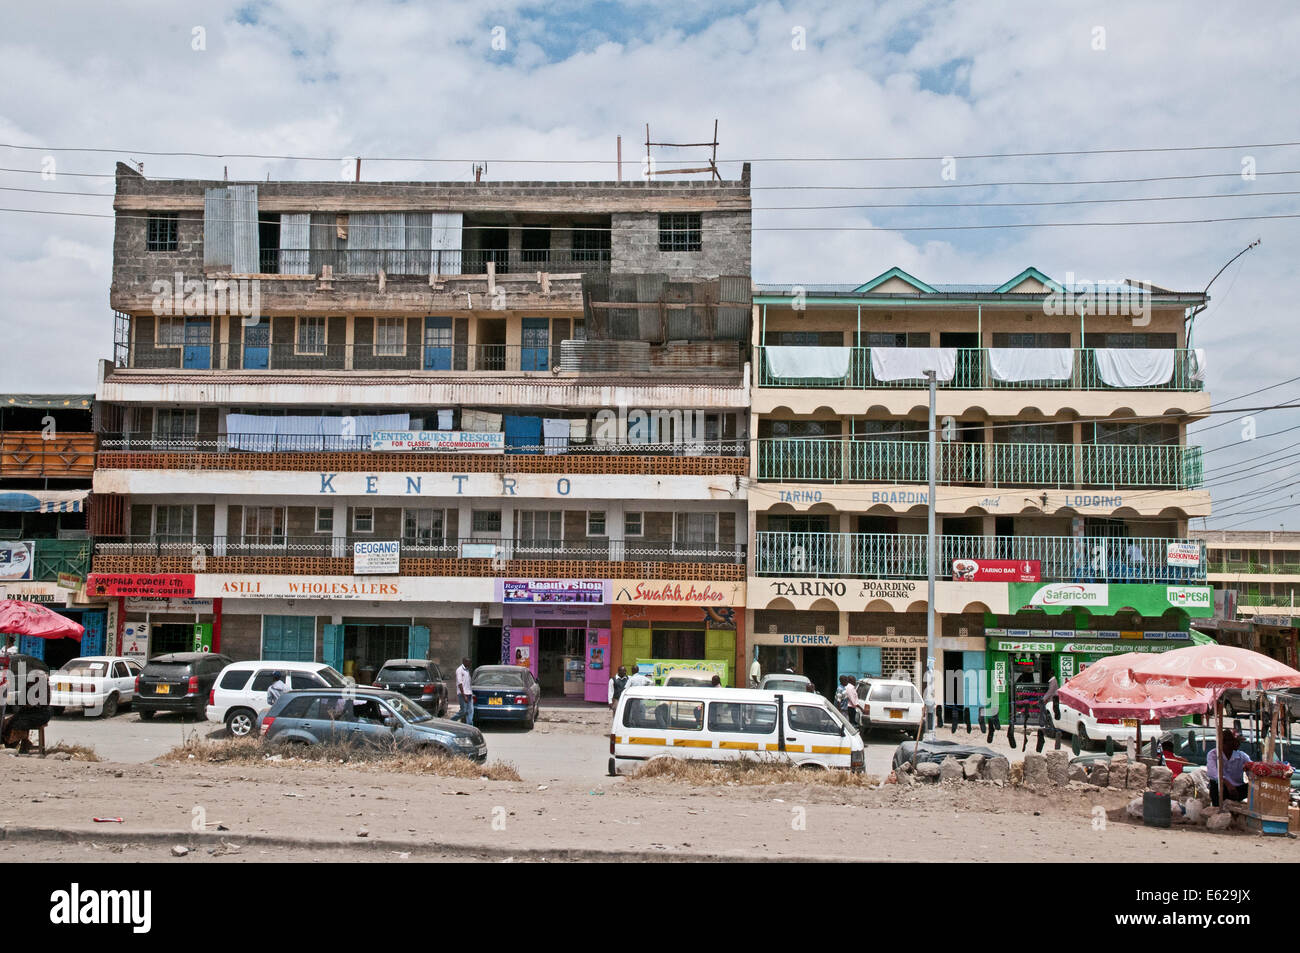 Kentro développement moderne bloc de bureau commercial de cinq étages à Kitengela sur Nairobi Kenya Afrique Namanga road SHOPPING SHOP OFF Banque D'Images